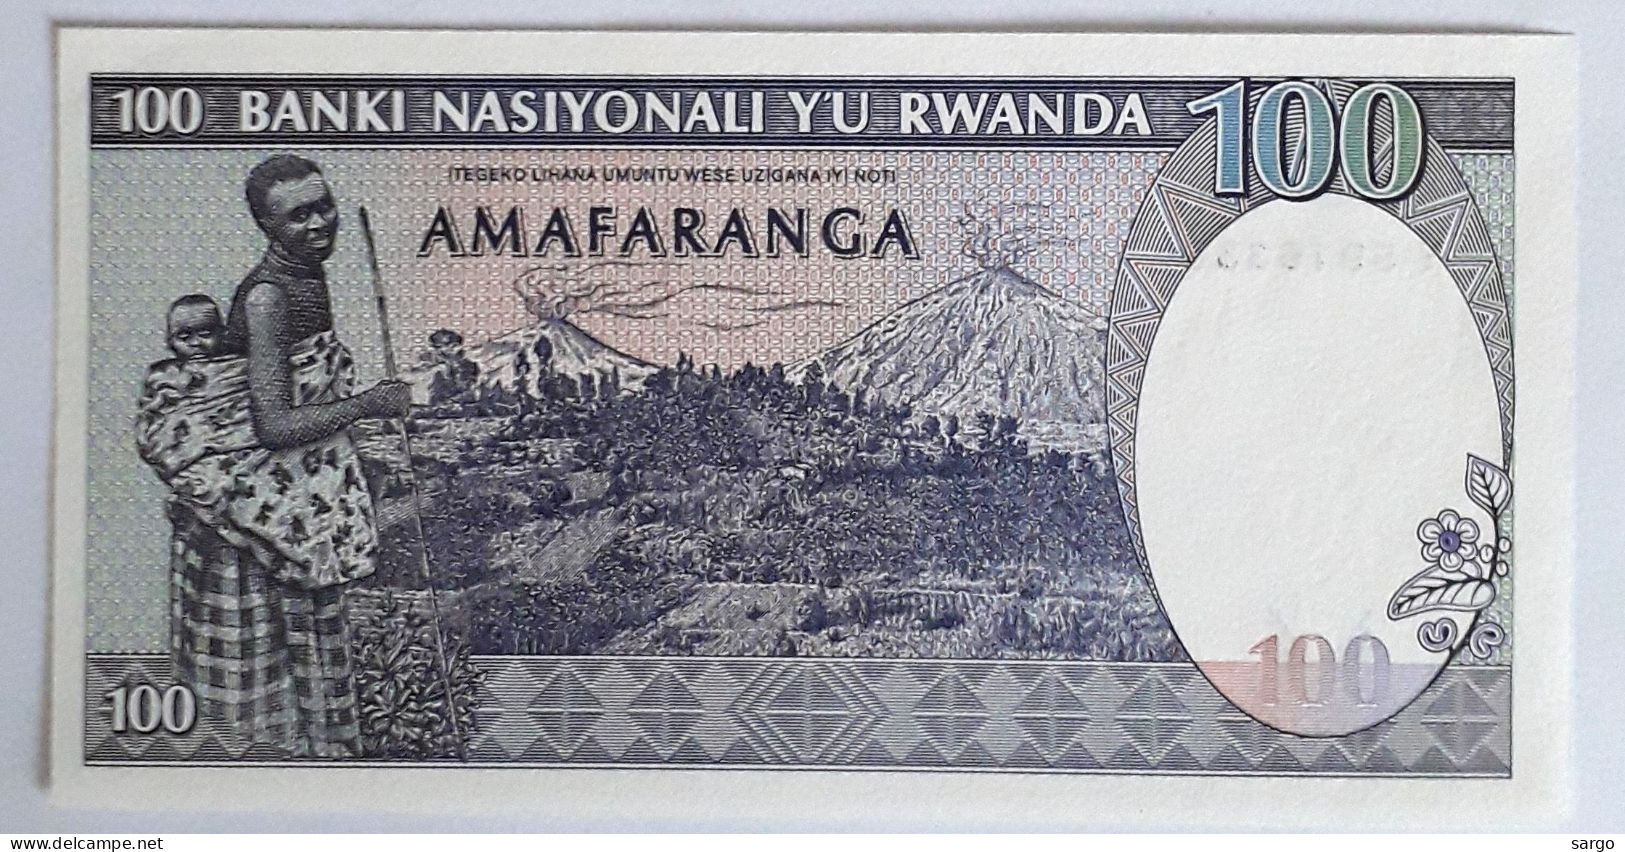 RWANDA - 100 FRANCS - 1989 - UNC - P 19 - BANKNOTES - PAPER MONEY - CARTAMONETA - - Rwanda